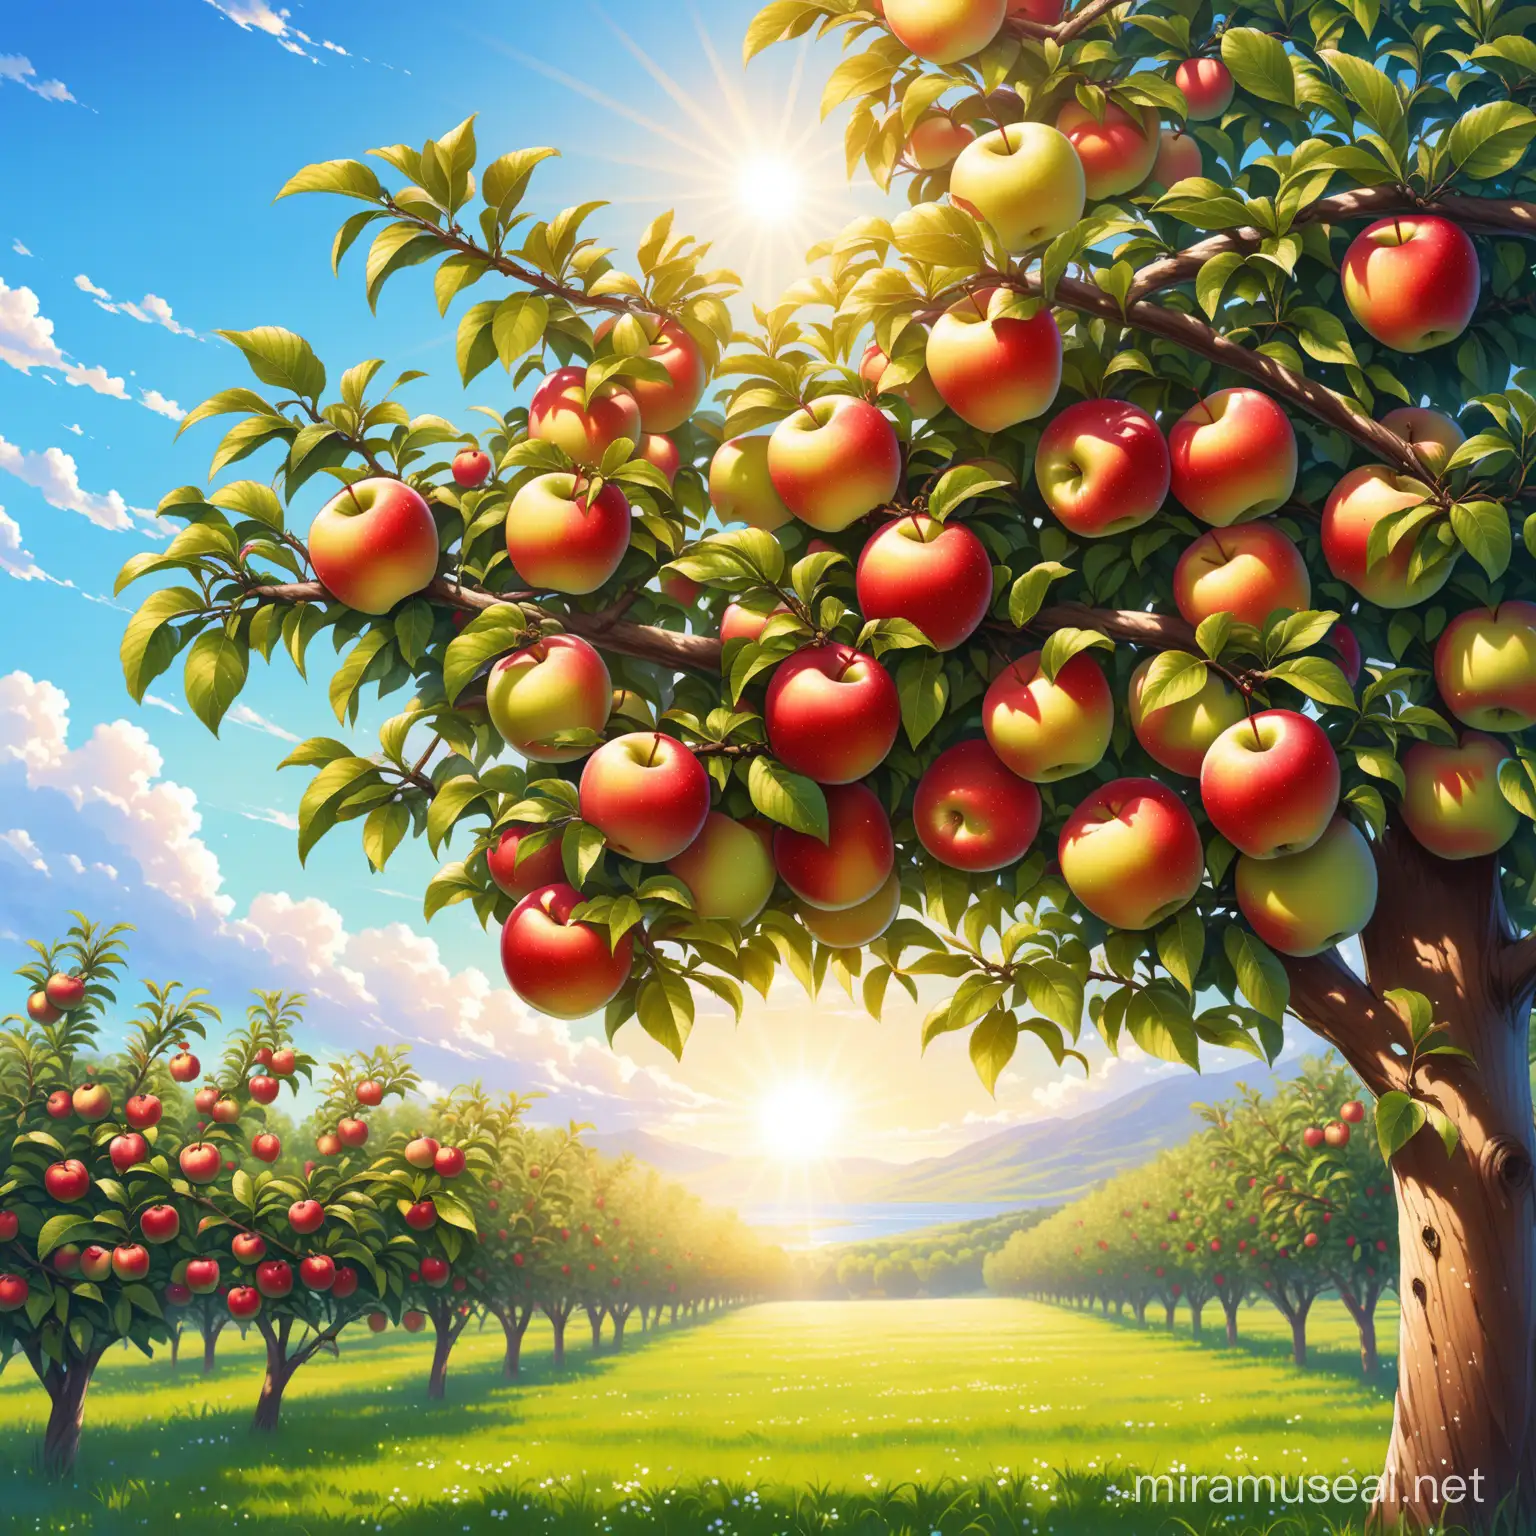 яблоко на яблоне, лето, солнце